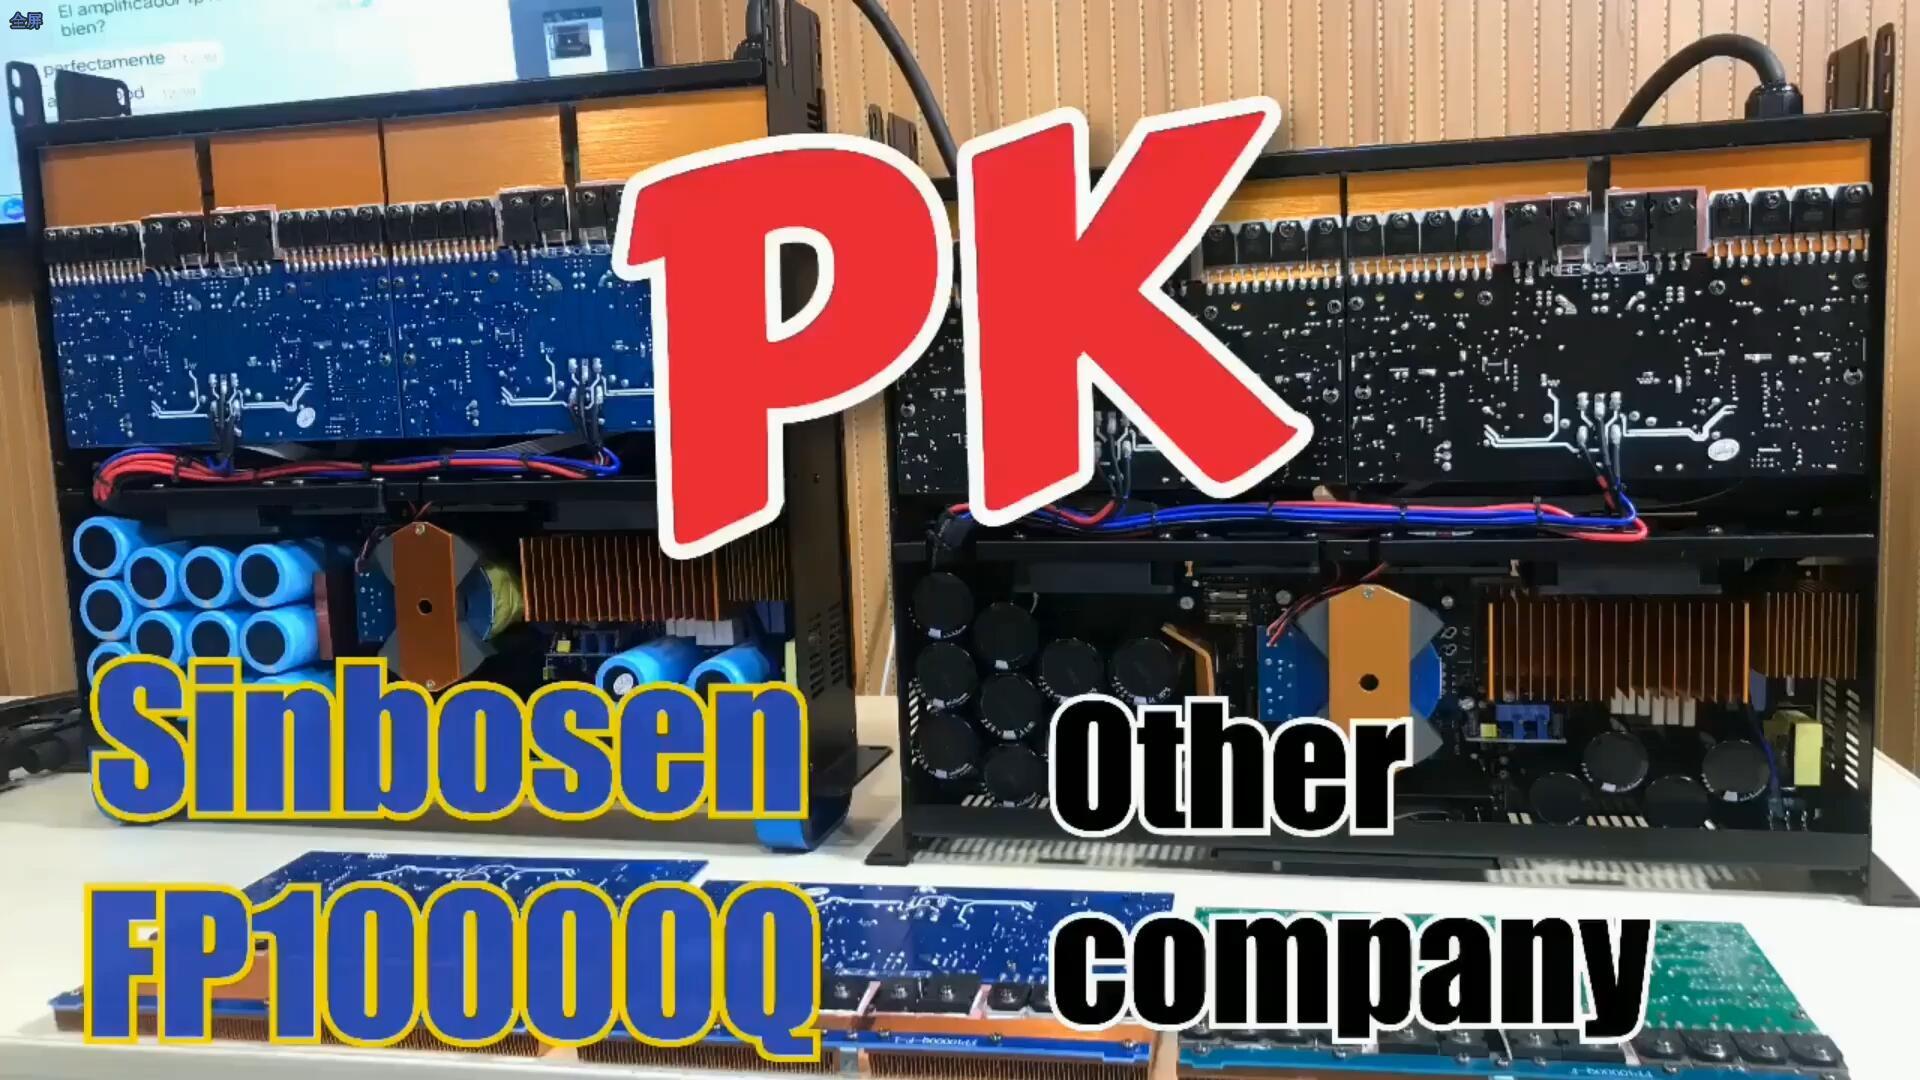 Sinbosen FP10000Q PK другая компания